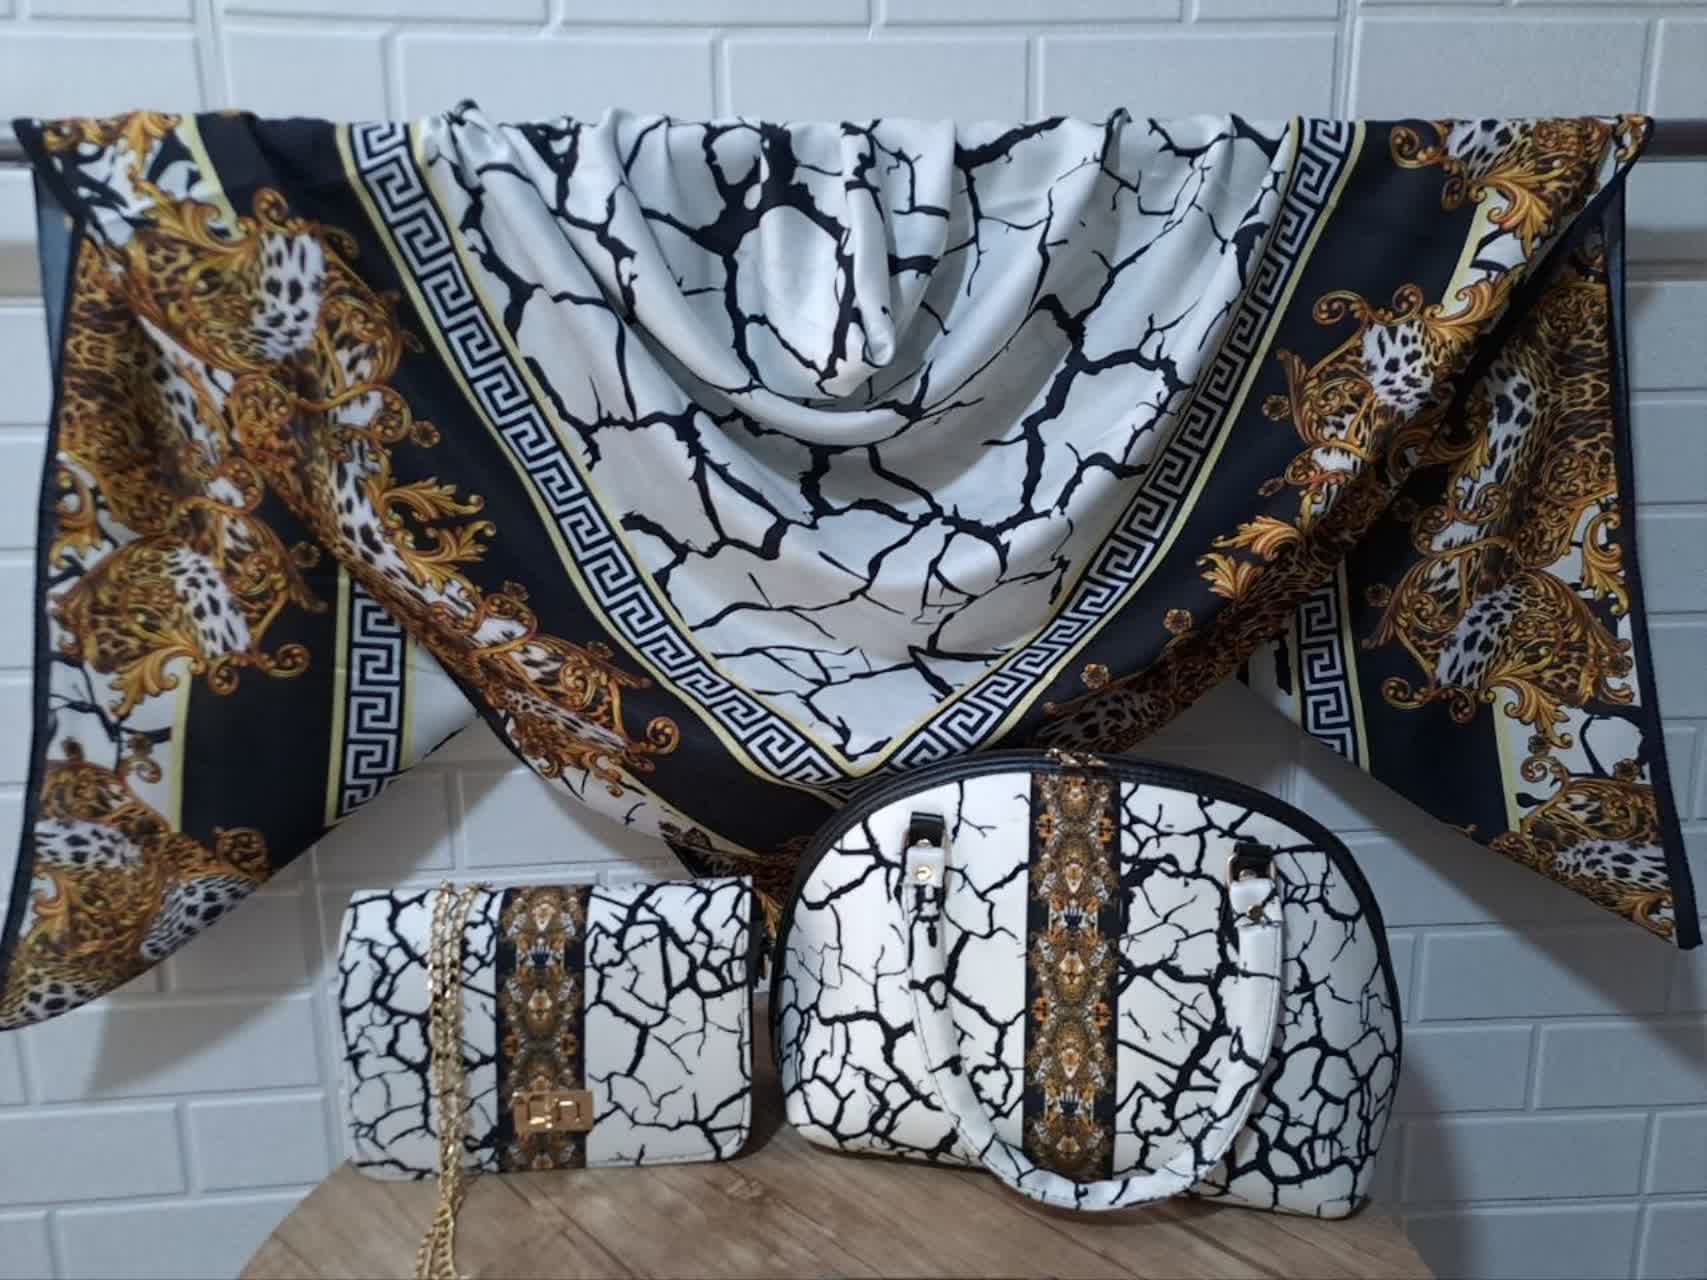 ست کیف و روسری زنانه با کیف نیمگرد رنگ سفید طلایی طرحدار با ارسال رایگان کد na1487